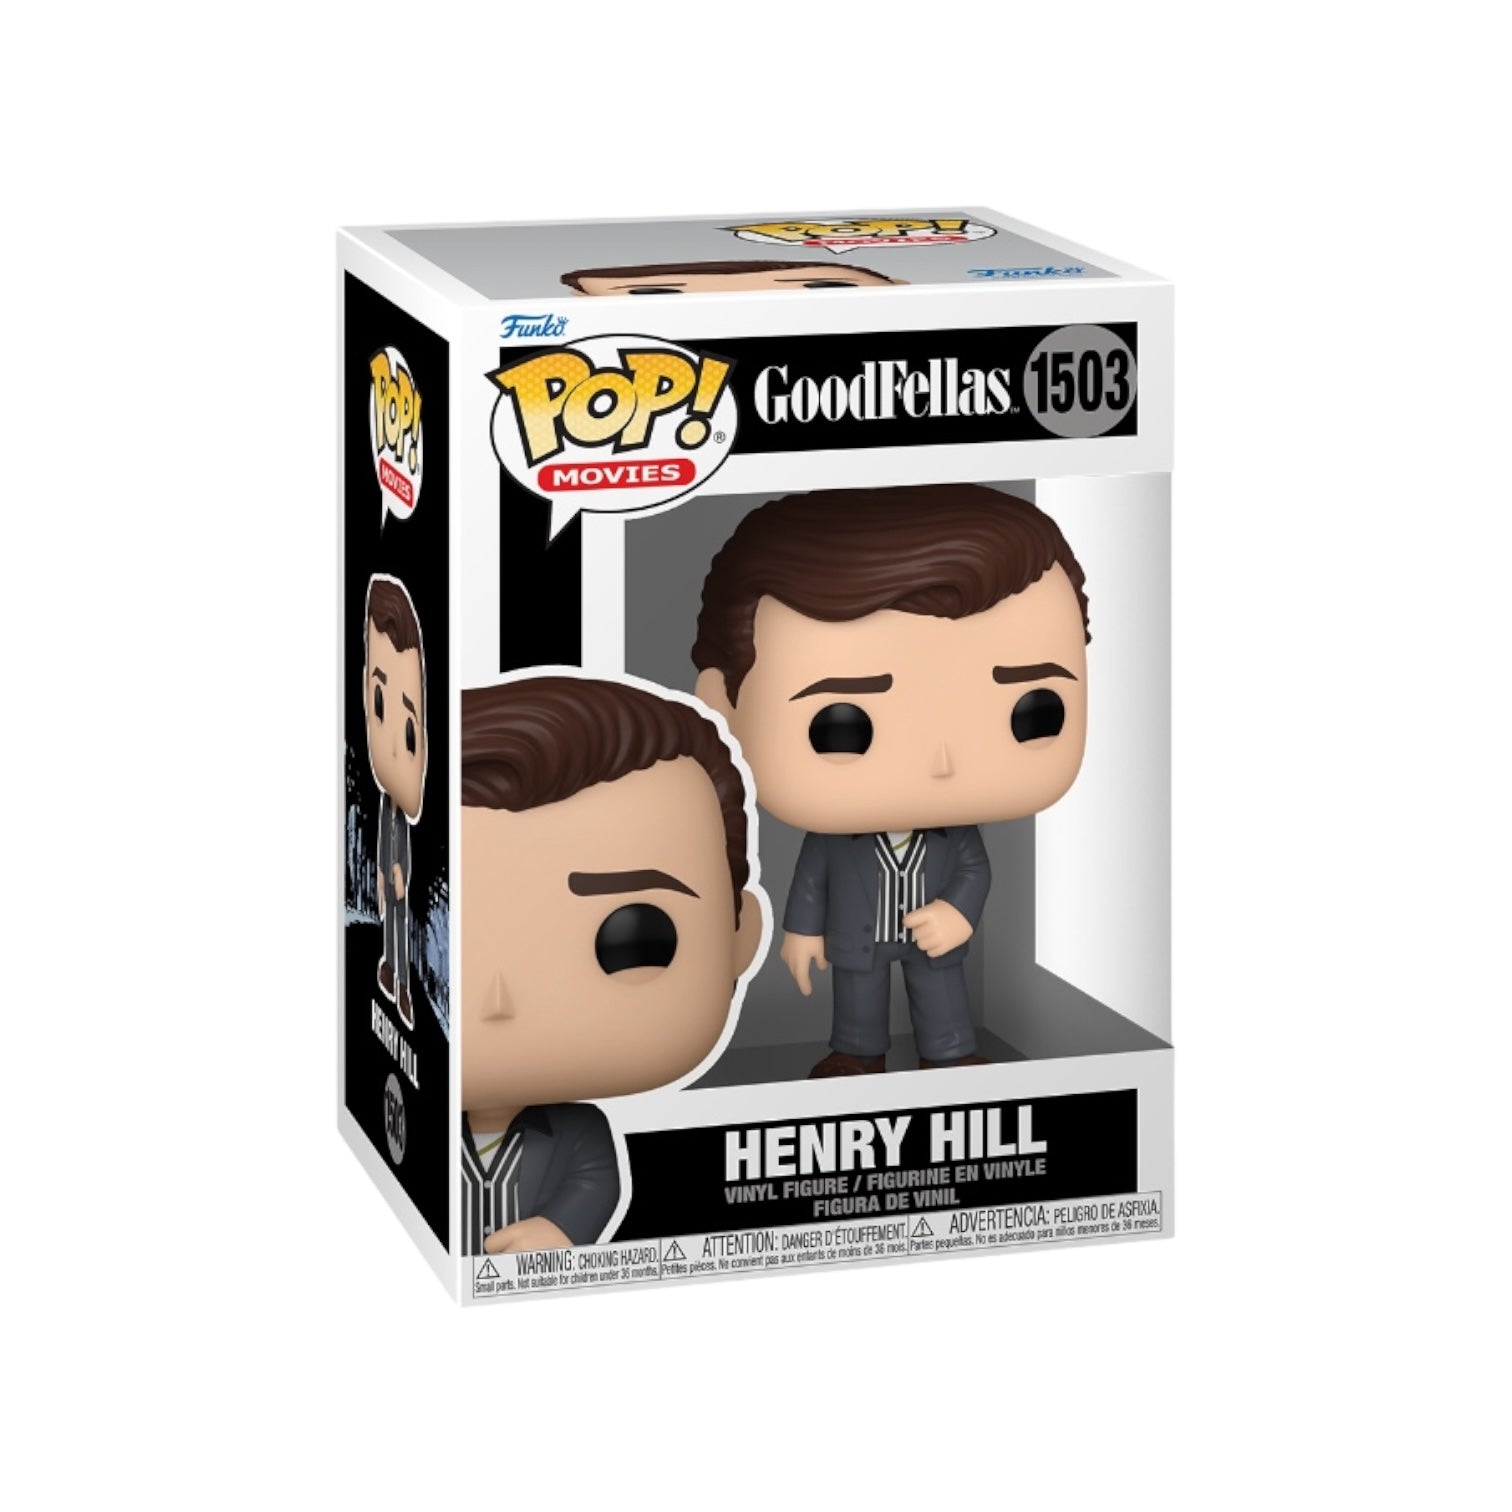 Henry Hill #1503 Funko Pop! - Goodfellas